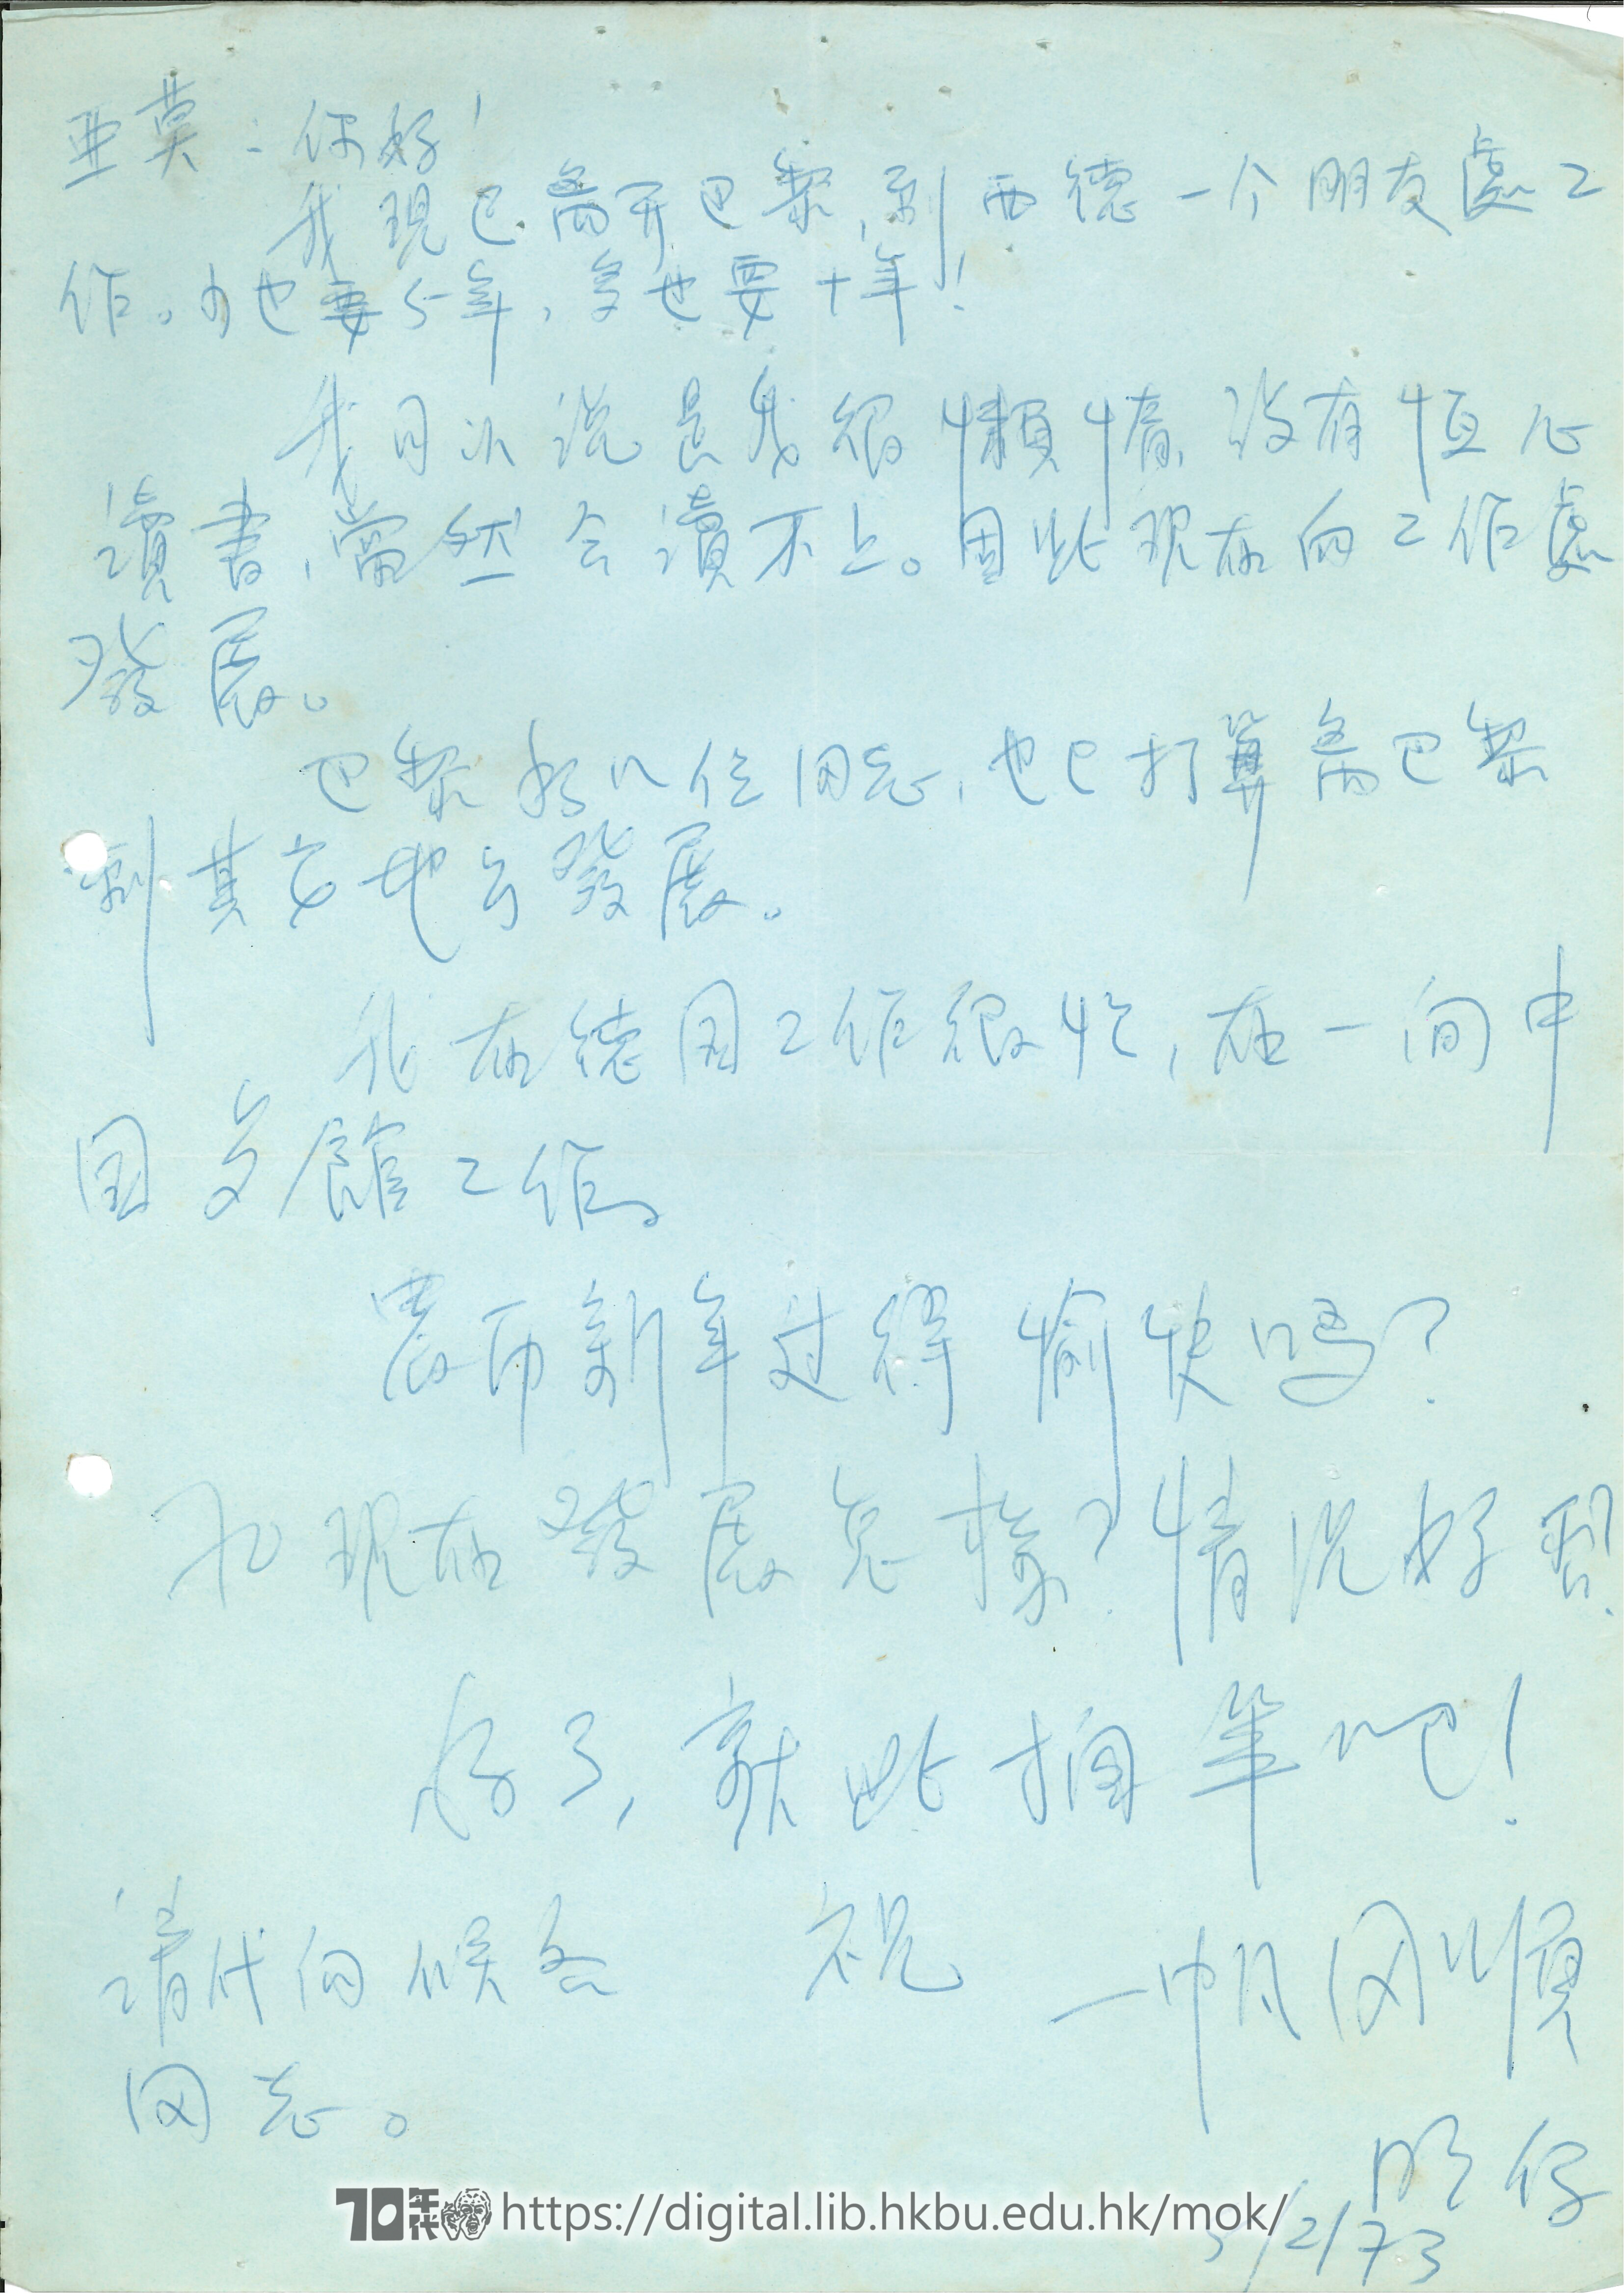   Letter to Mok Chiu Yu  